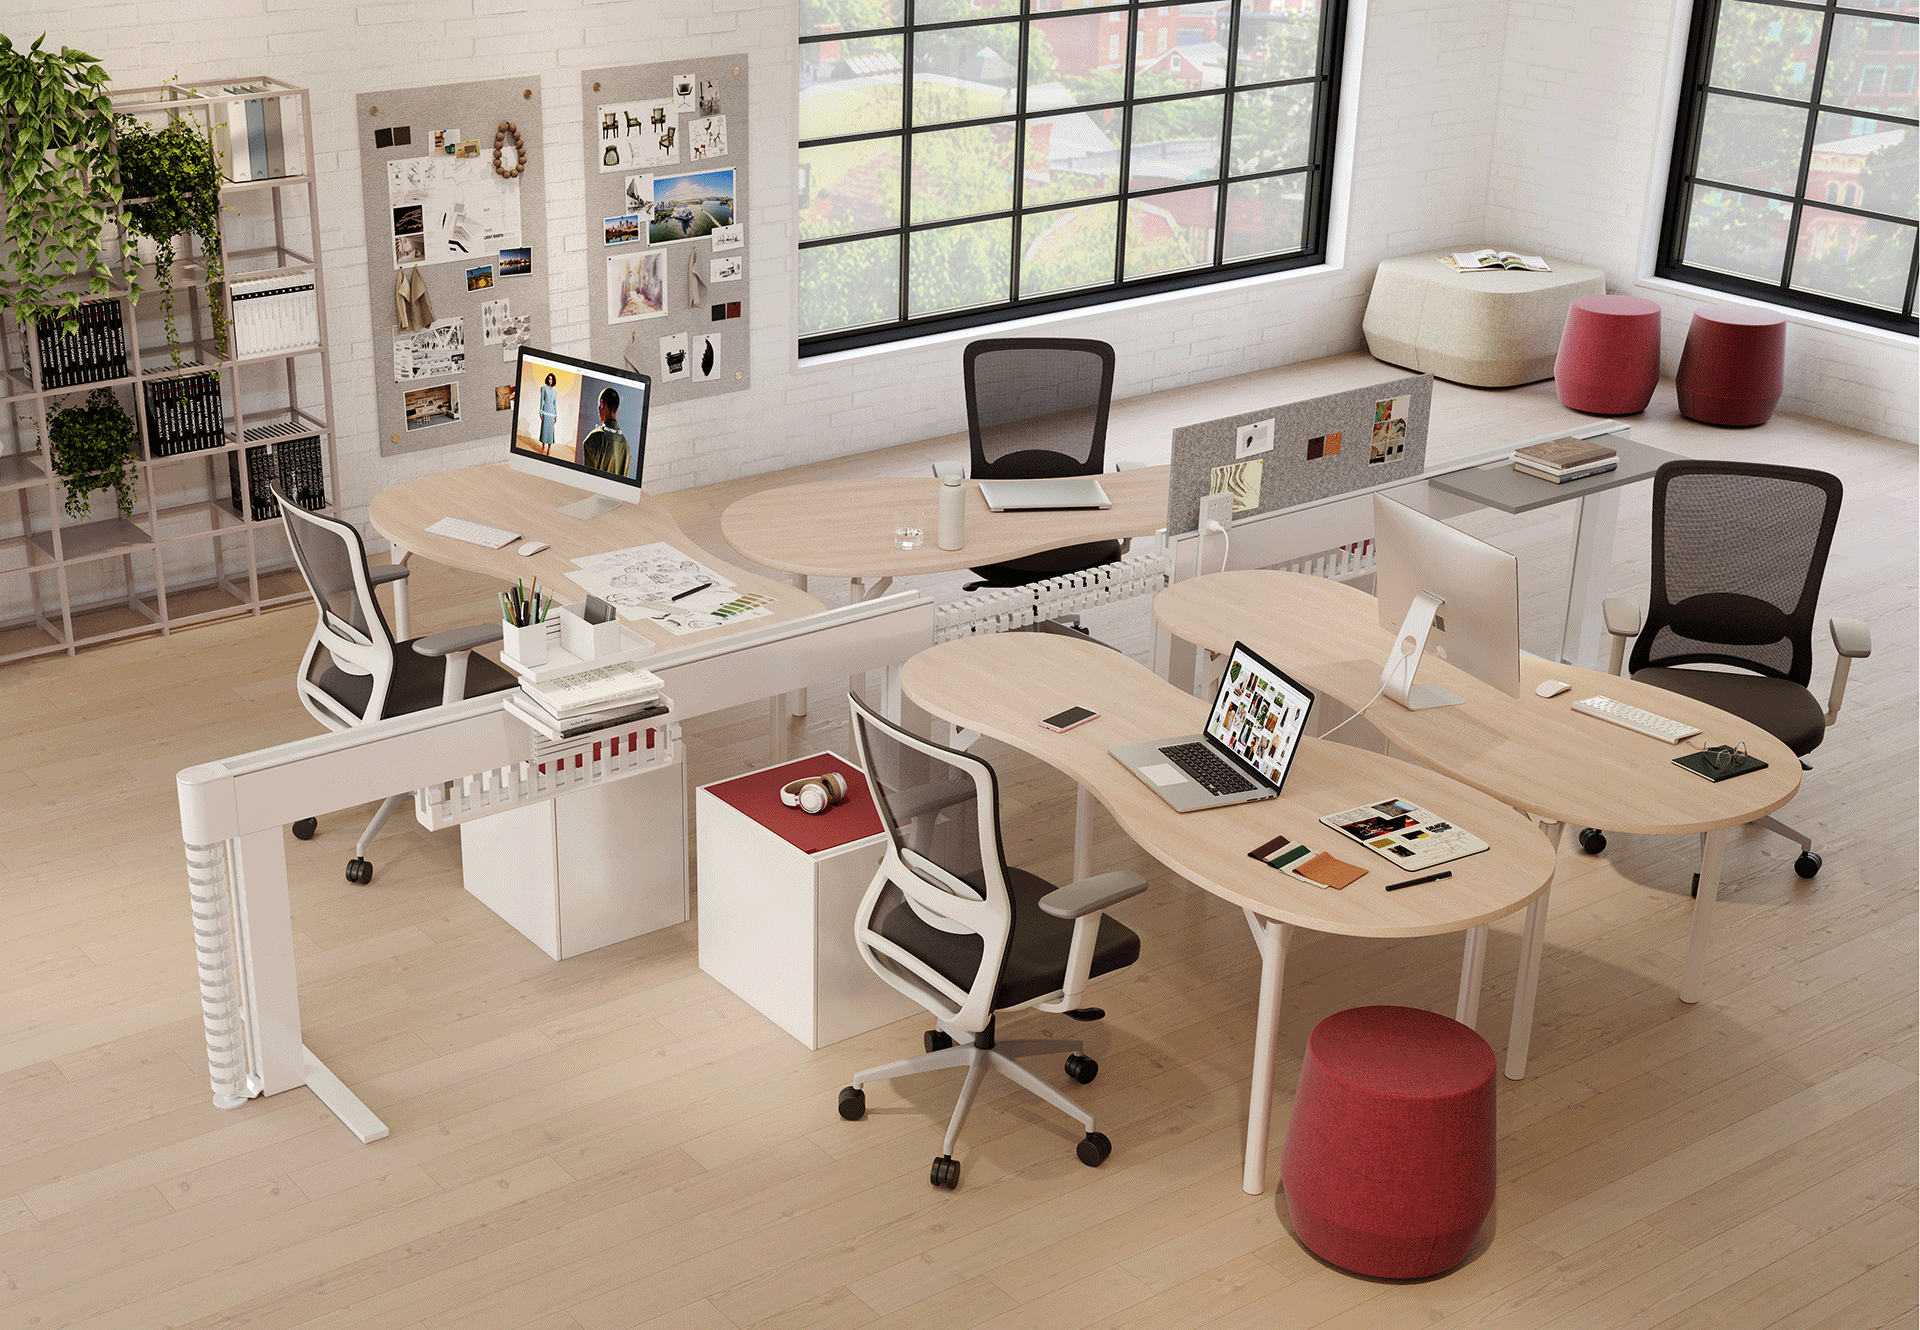 Schiavello，办公家具设计，模块化设计，